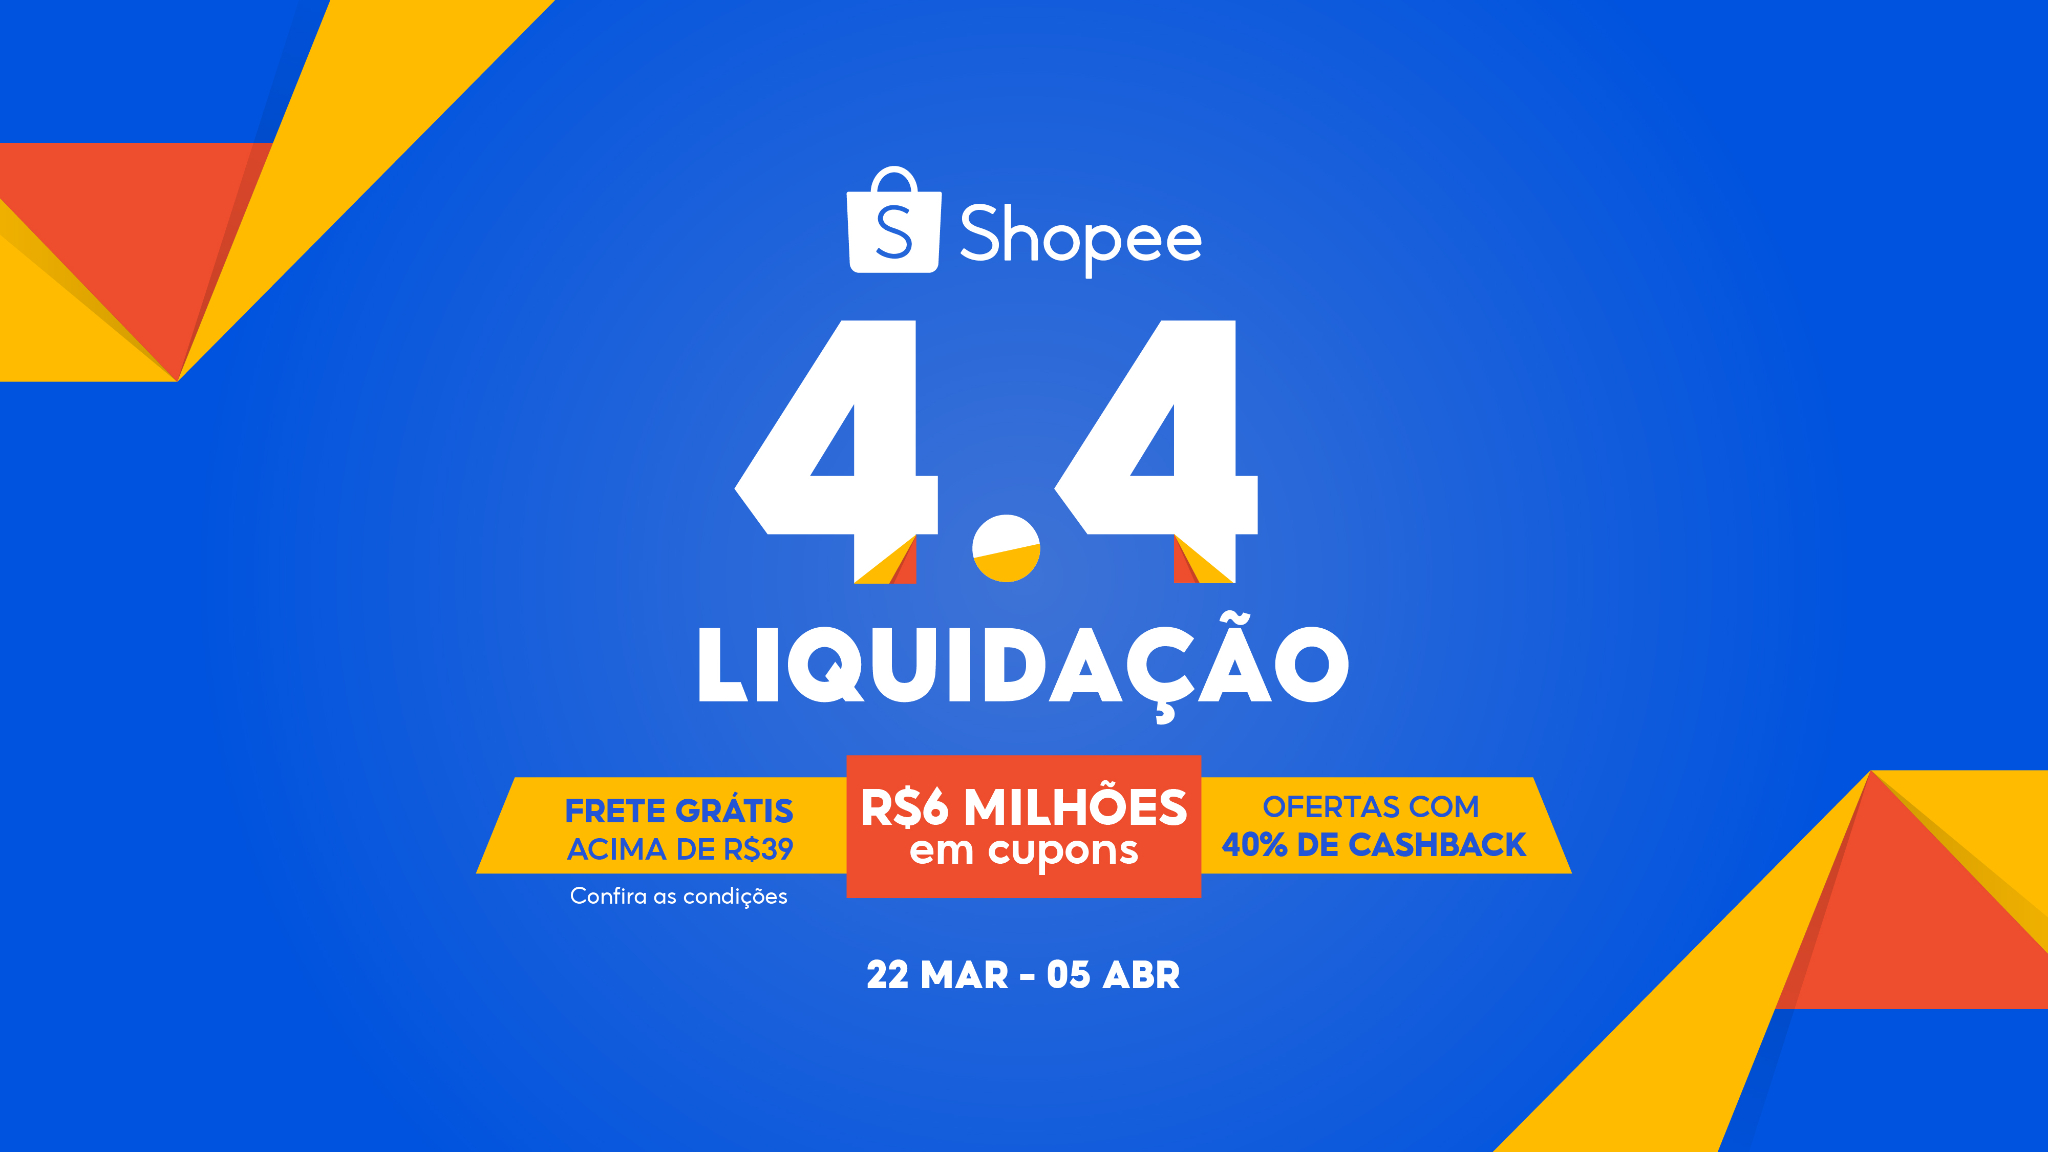 Shopee Brasil Ofertas incríveis. Melhores preços do mercado, luluca desenho  para imprimir